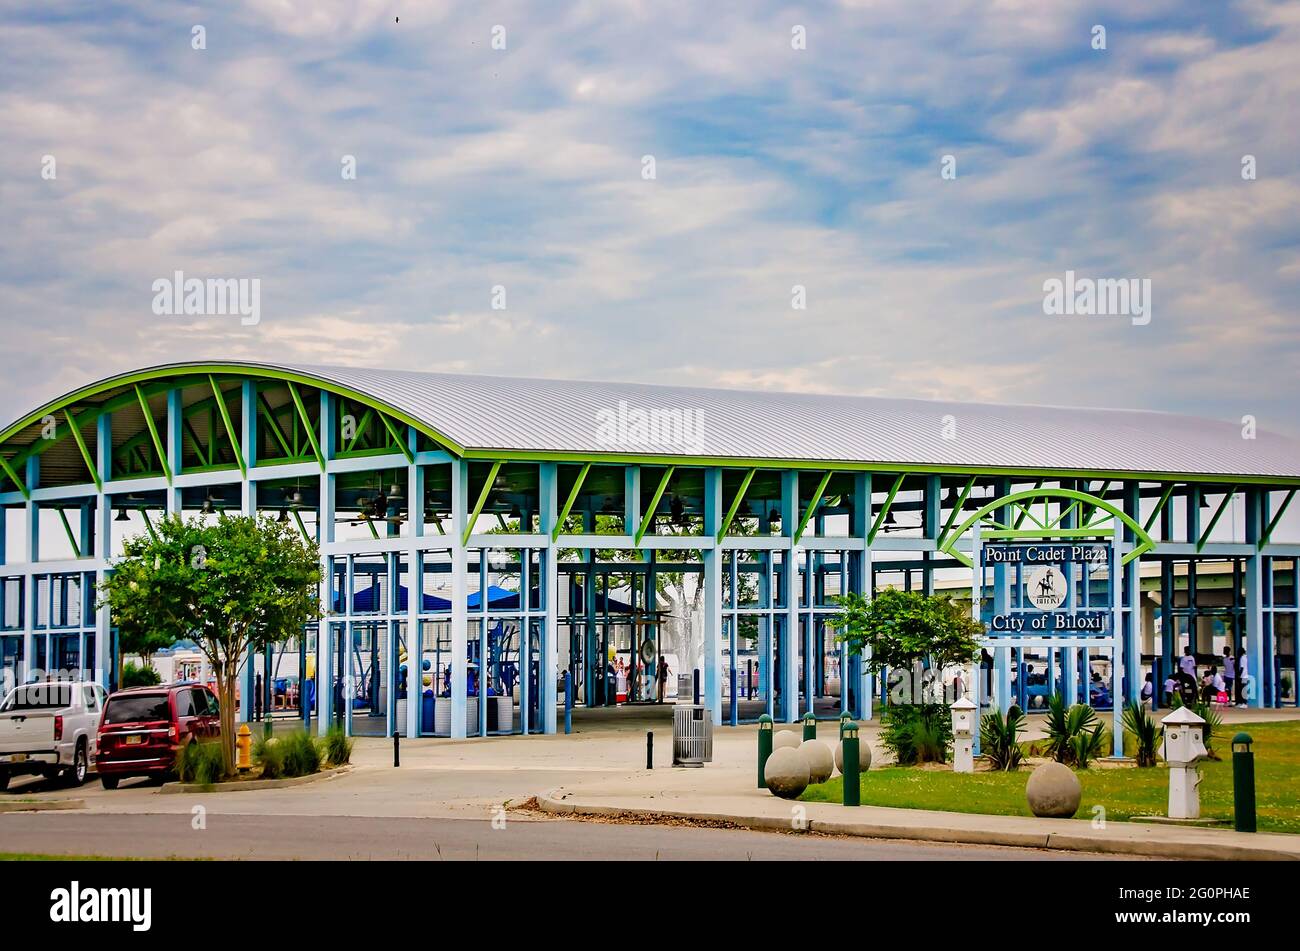 Point Cadet Plaza est photographié, le 29 mai 2021, à Biloxi, Mississippi. Le parc en bord de mer est doté d'un grand pavillon et d'une pataugeoire pour les enfants. Banque D'Images